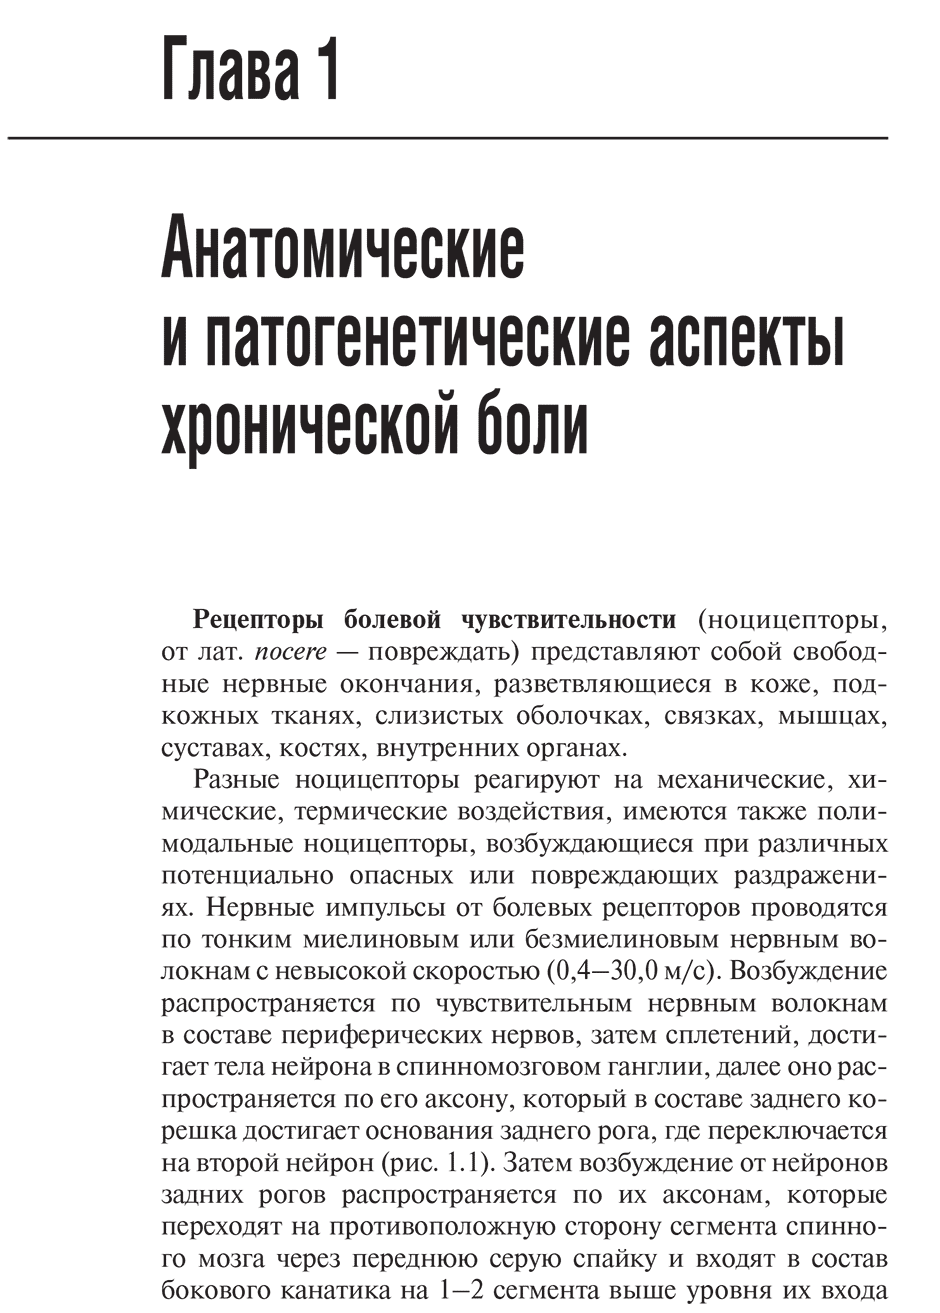 Пример страницы из книги "Хроническая боль и ее лечение в неврологии" - Парфенов В. А., Головачева В. А.